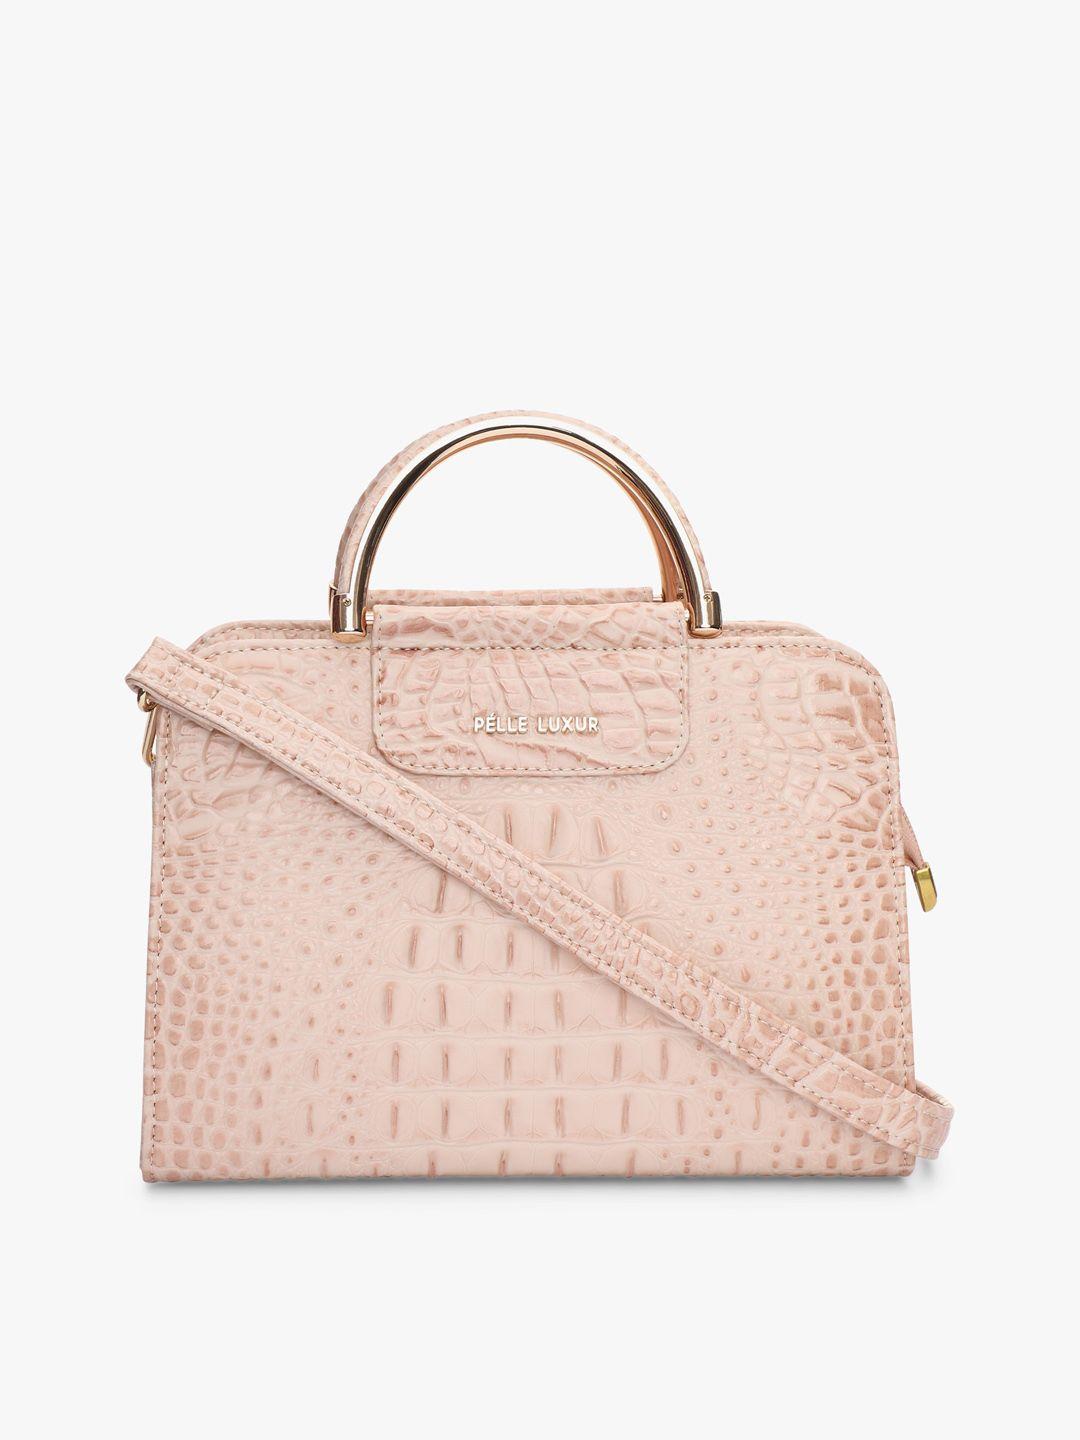 pelle luxur textured structured handheld bag